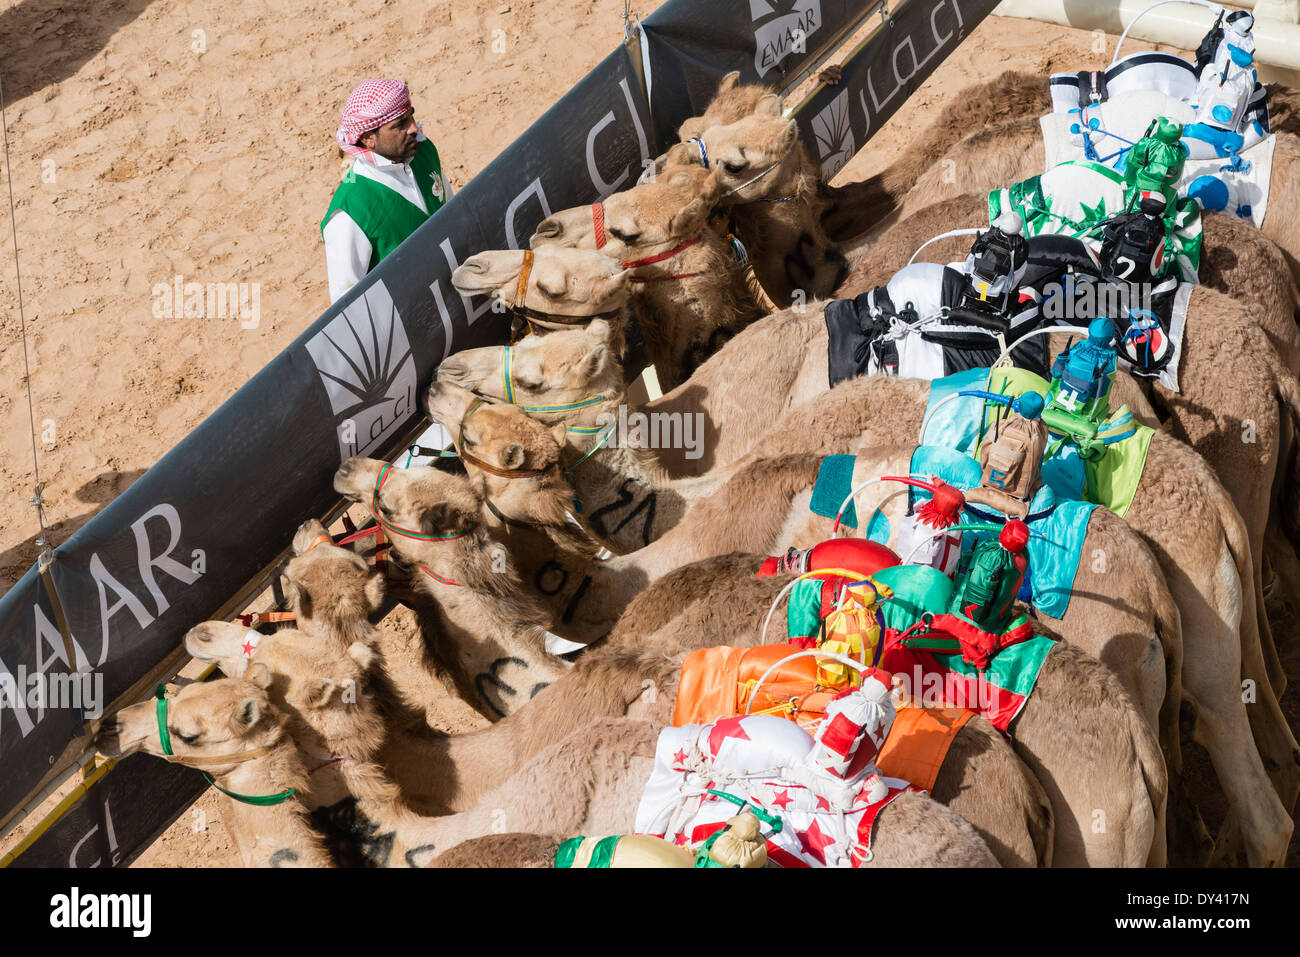 Partenza porta al camel racing festival al cammello Marmoum racing racetrack in Dubai Emirati Arabi Uniti Foto Stock